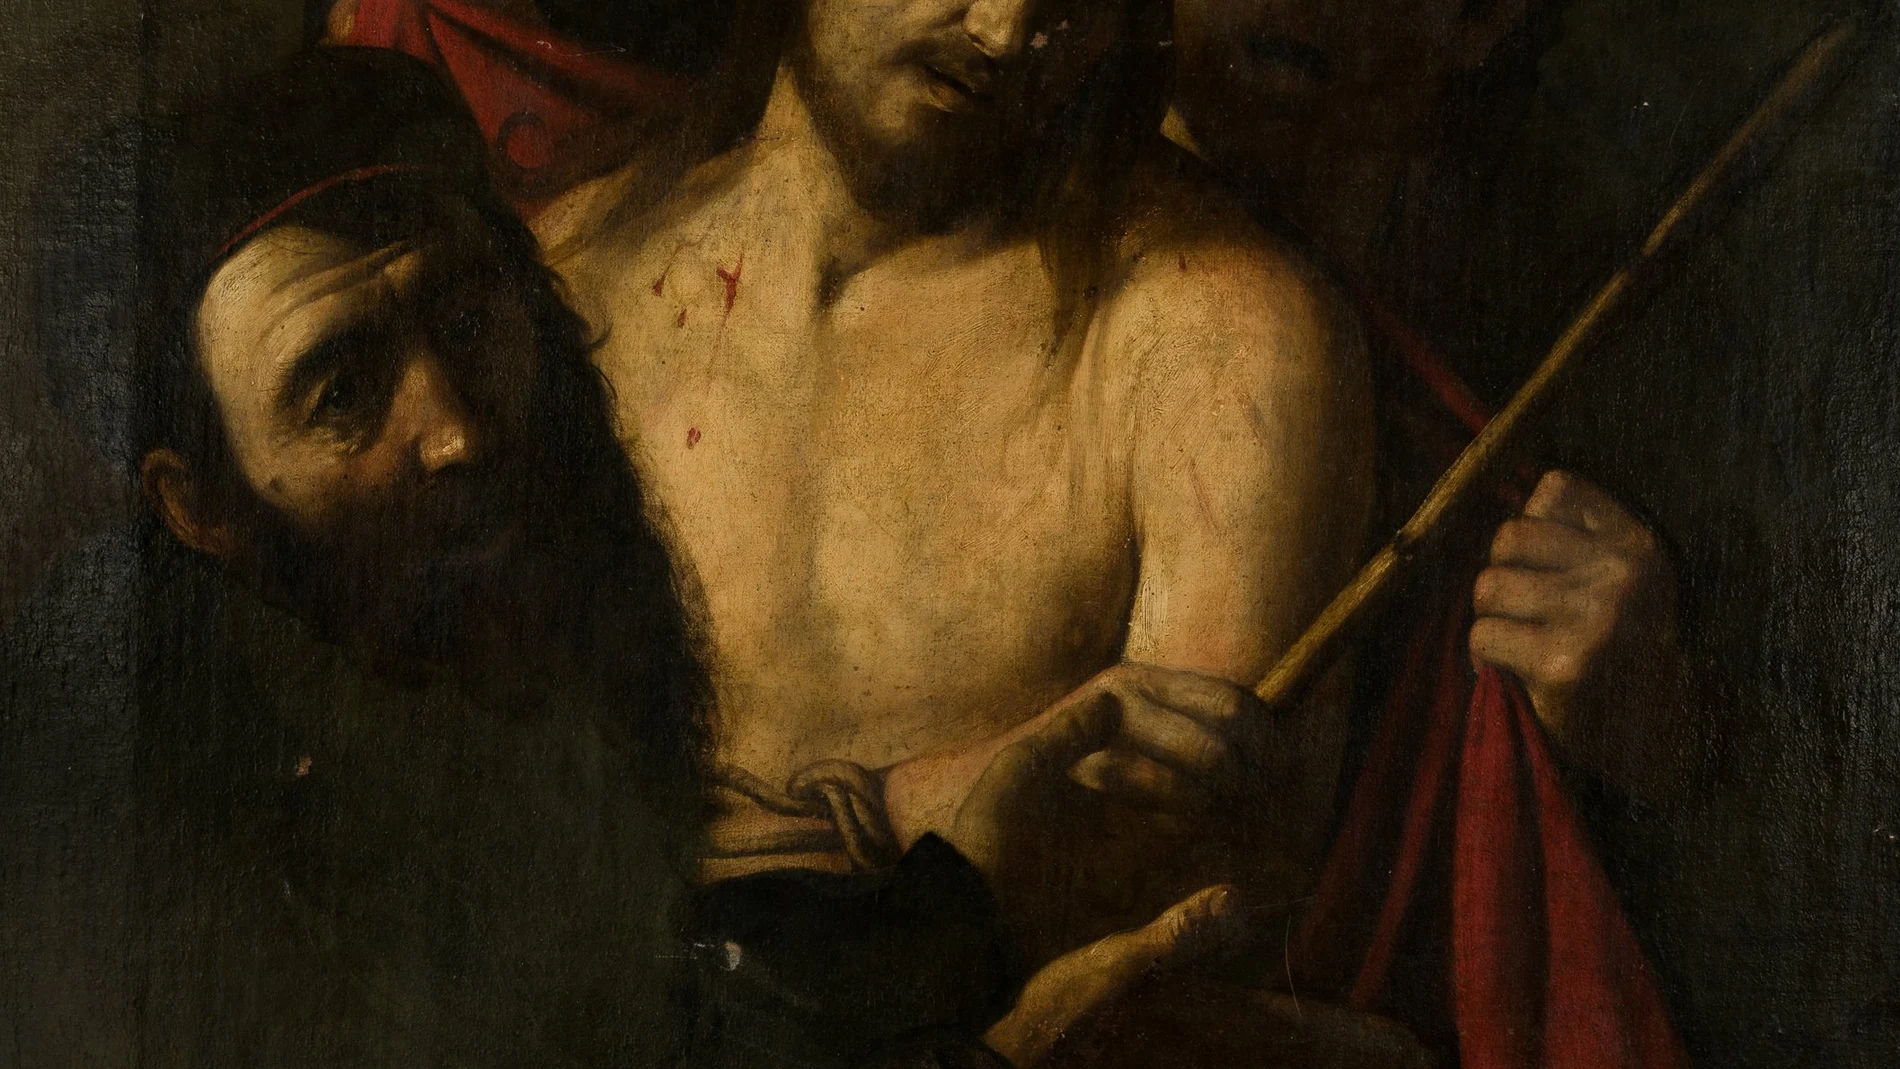 La obra de Caravaggio